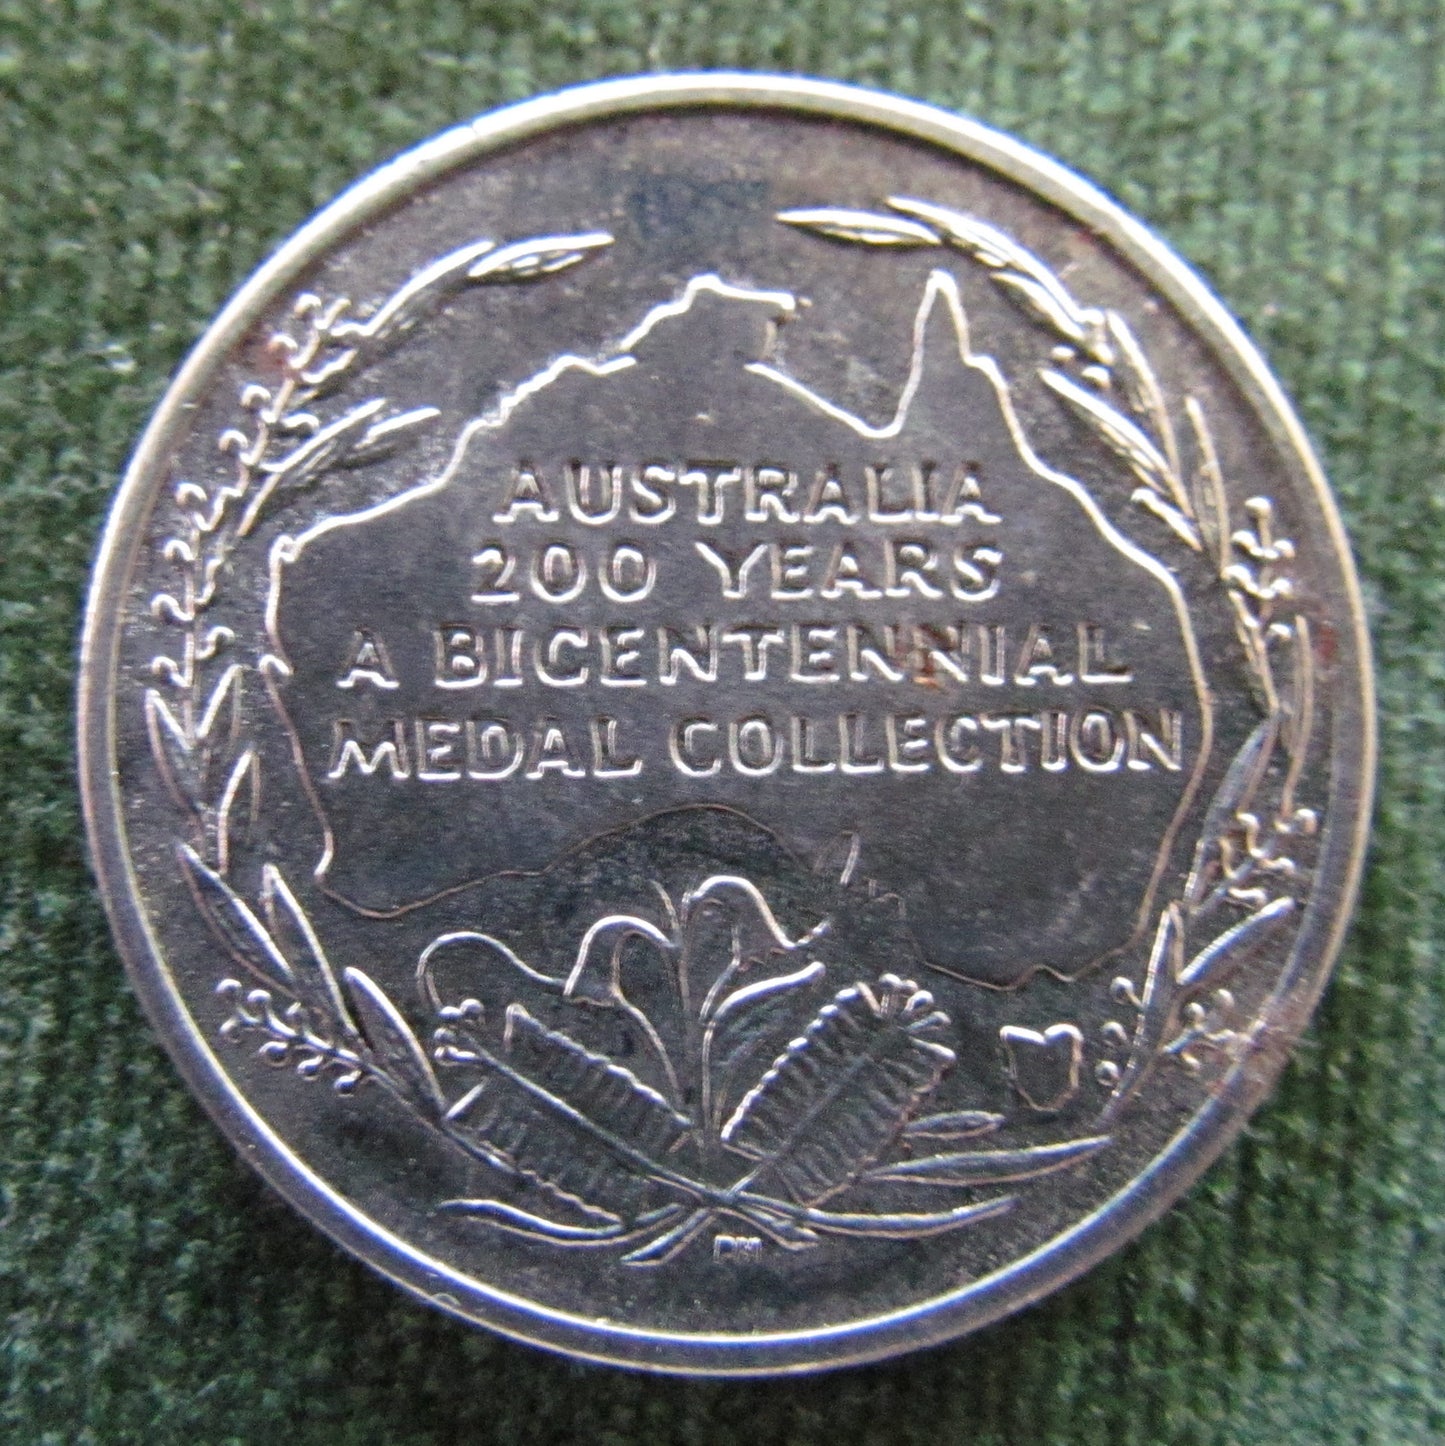 Australian Bicentennial Medal Collection Burke & Wills Token